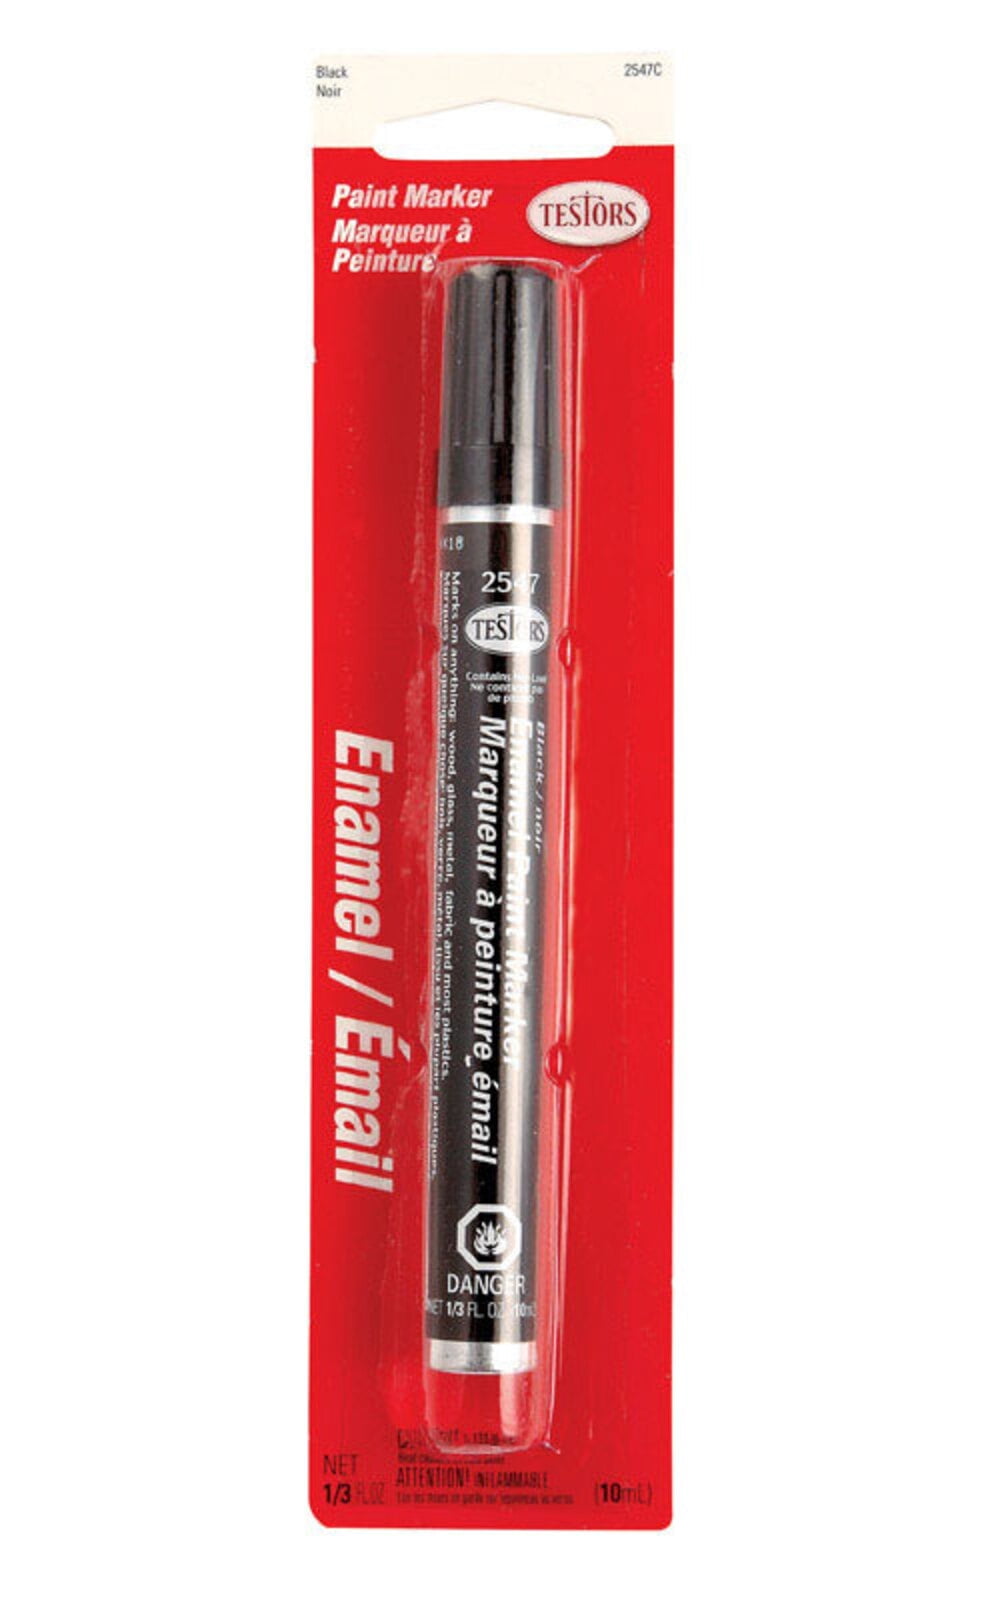 Trex Touch-Up Paint Pen - Charcoal Black